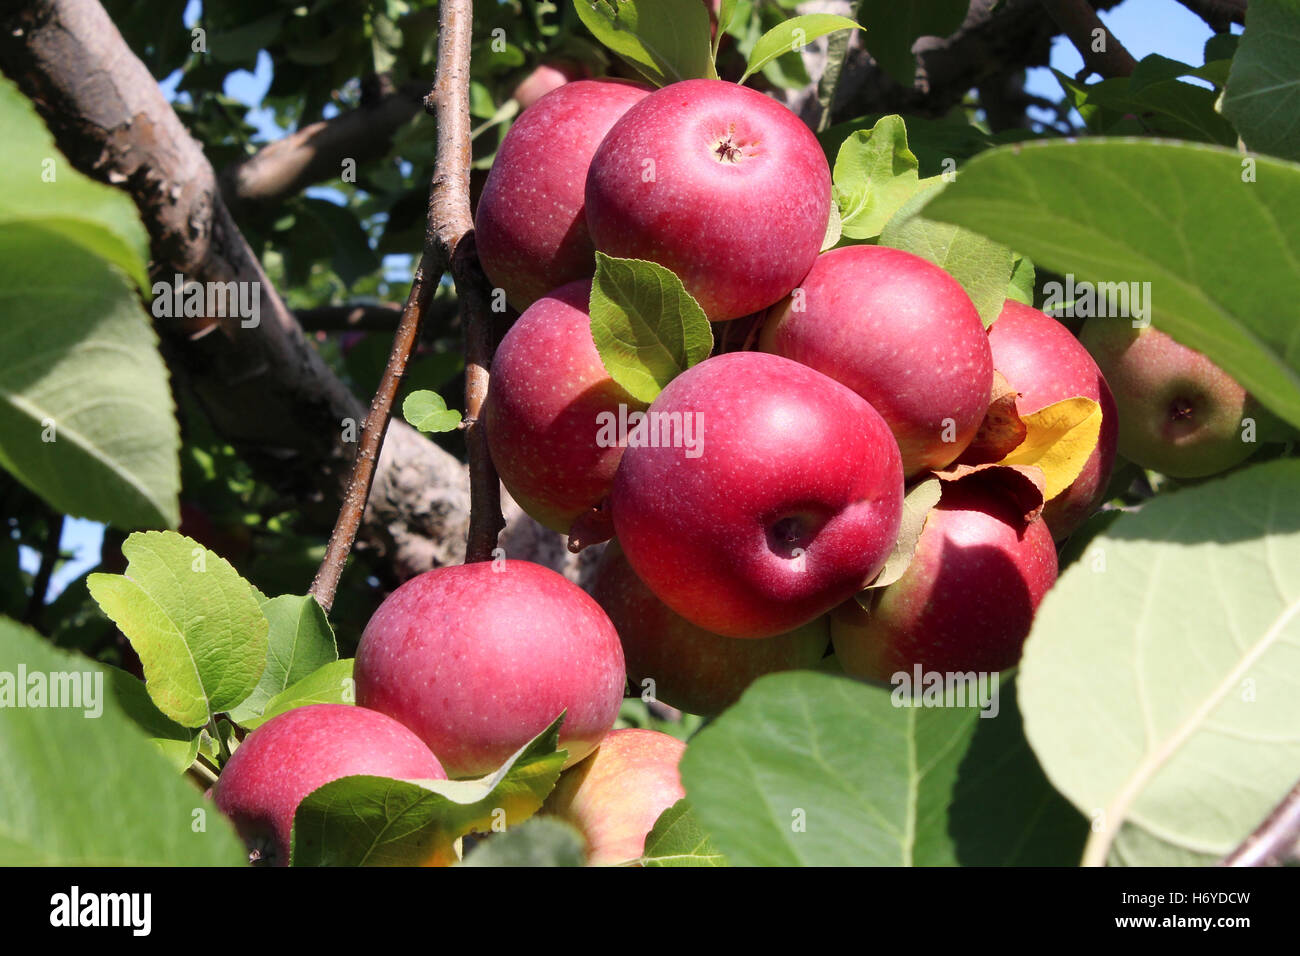 Huerto de manzanos de clúster de frutas maduras rojas manzanas en un generoso montón en la rama de un árbol como una cosecha agrícola de alimentos frescos y naturales de un huerto. Foto de stock